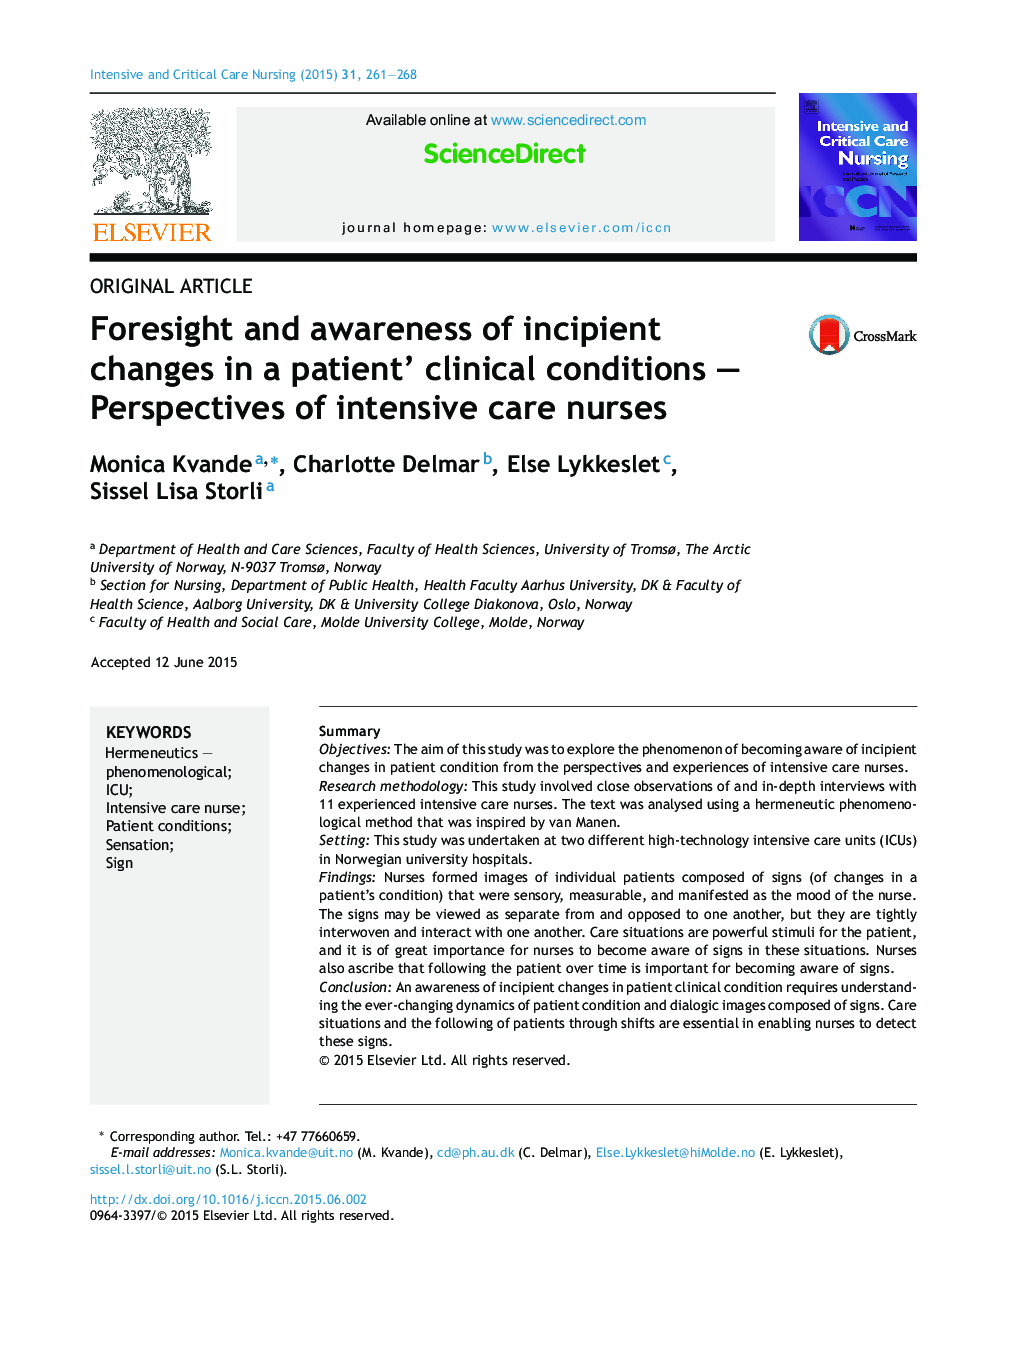 پیش بینی و آگاهی از تغییرات اولیه در شرایط بالینی بیمار؛ چشم انداز پرستاران مراقبت های ویژه